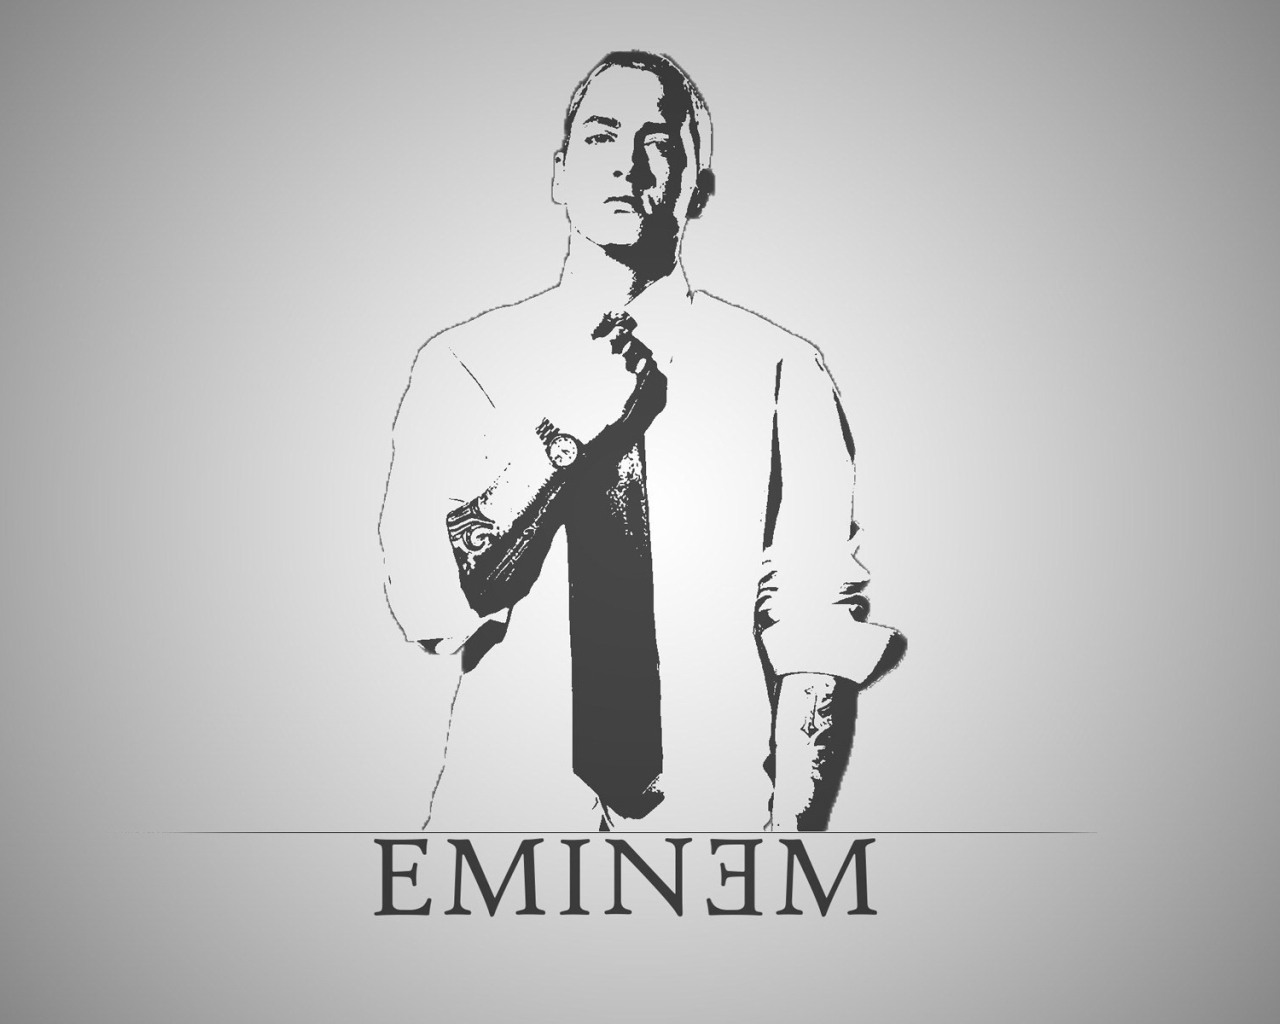 Portrait of the famous Eminem